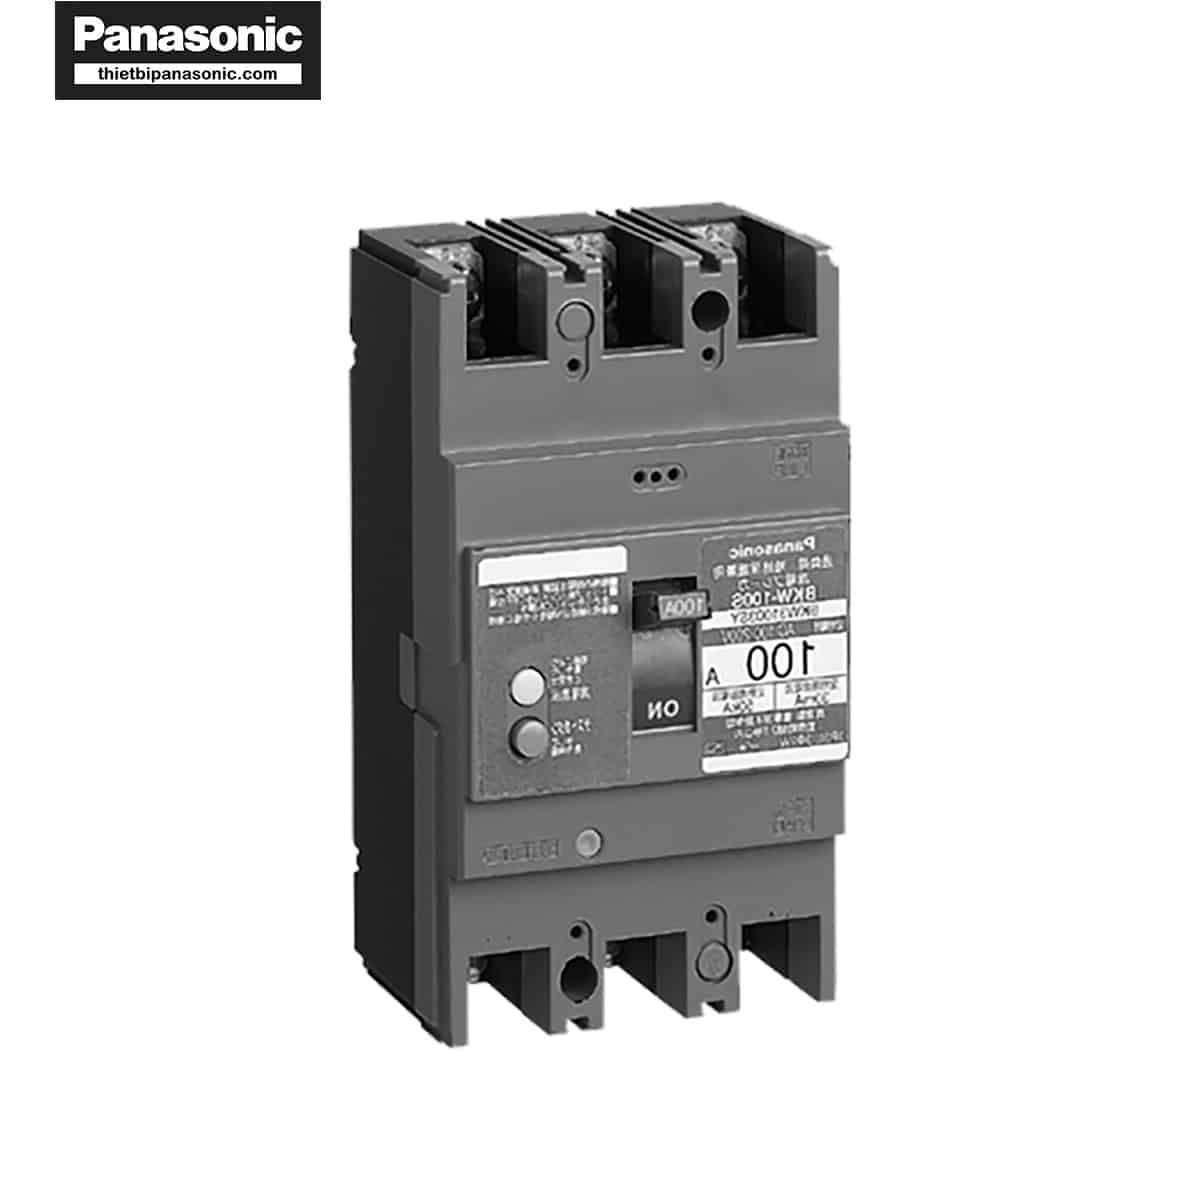 ELCB Panasonic 100A 30mA BKW21003KY 25kA được làm từ chất liệu cao cấp, bền bỉ mang lại hiệu năng cao khi sử dụng thực tế